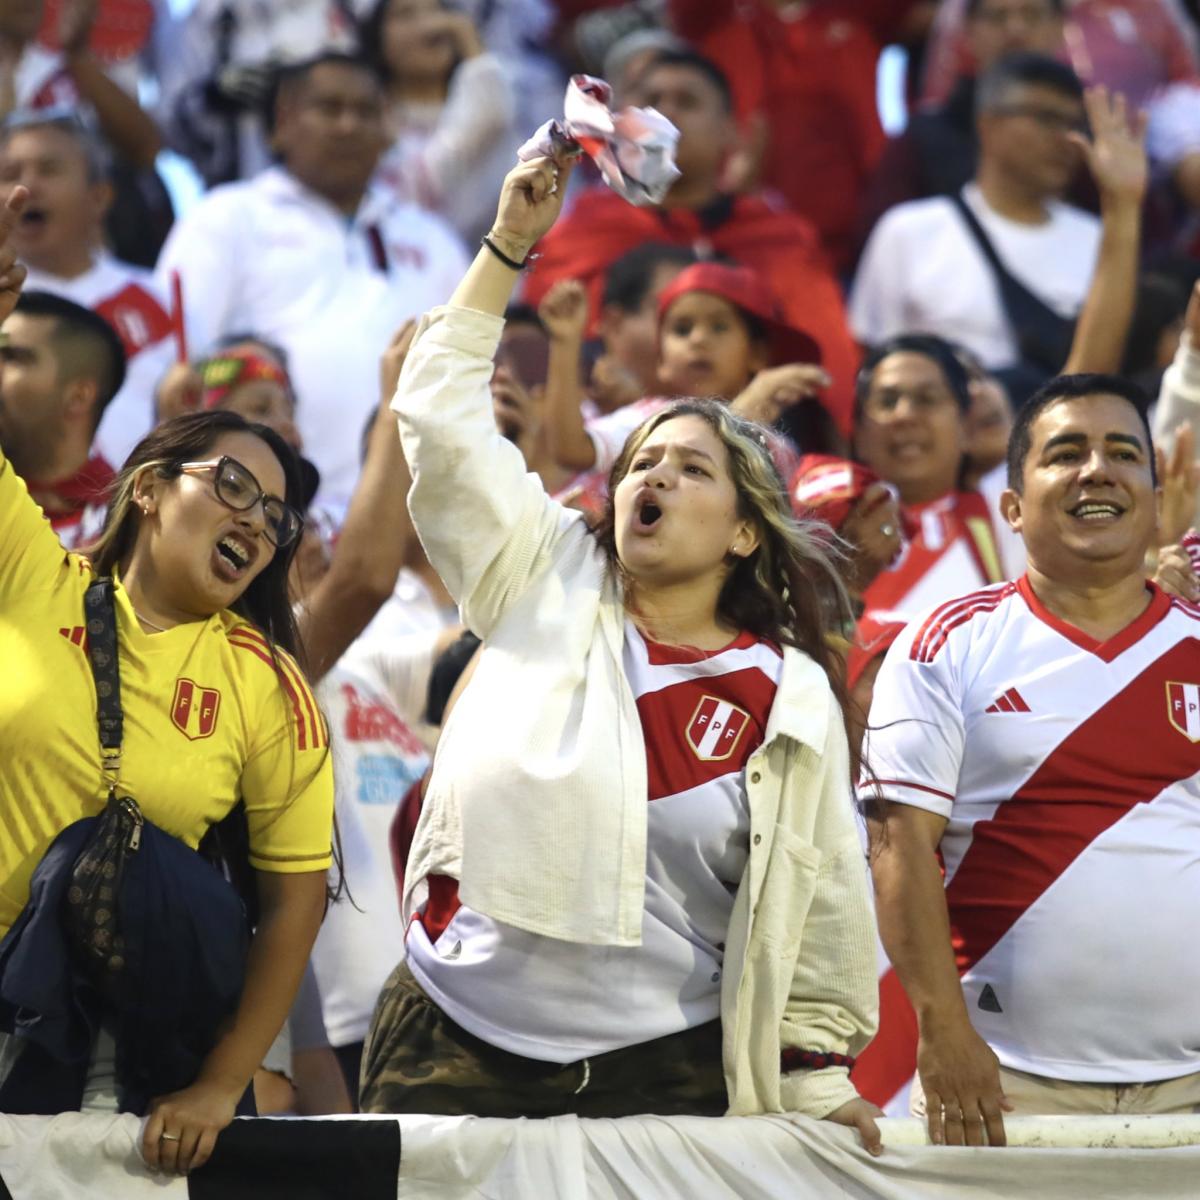 Selección Peruana